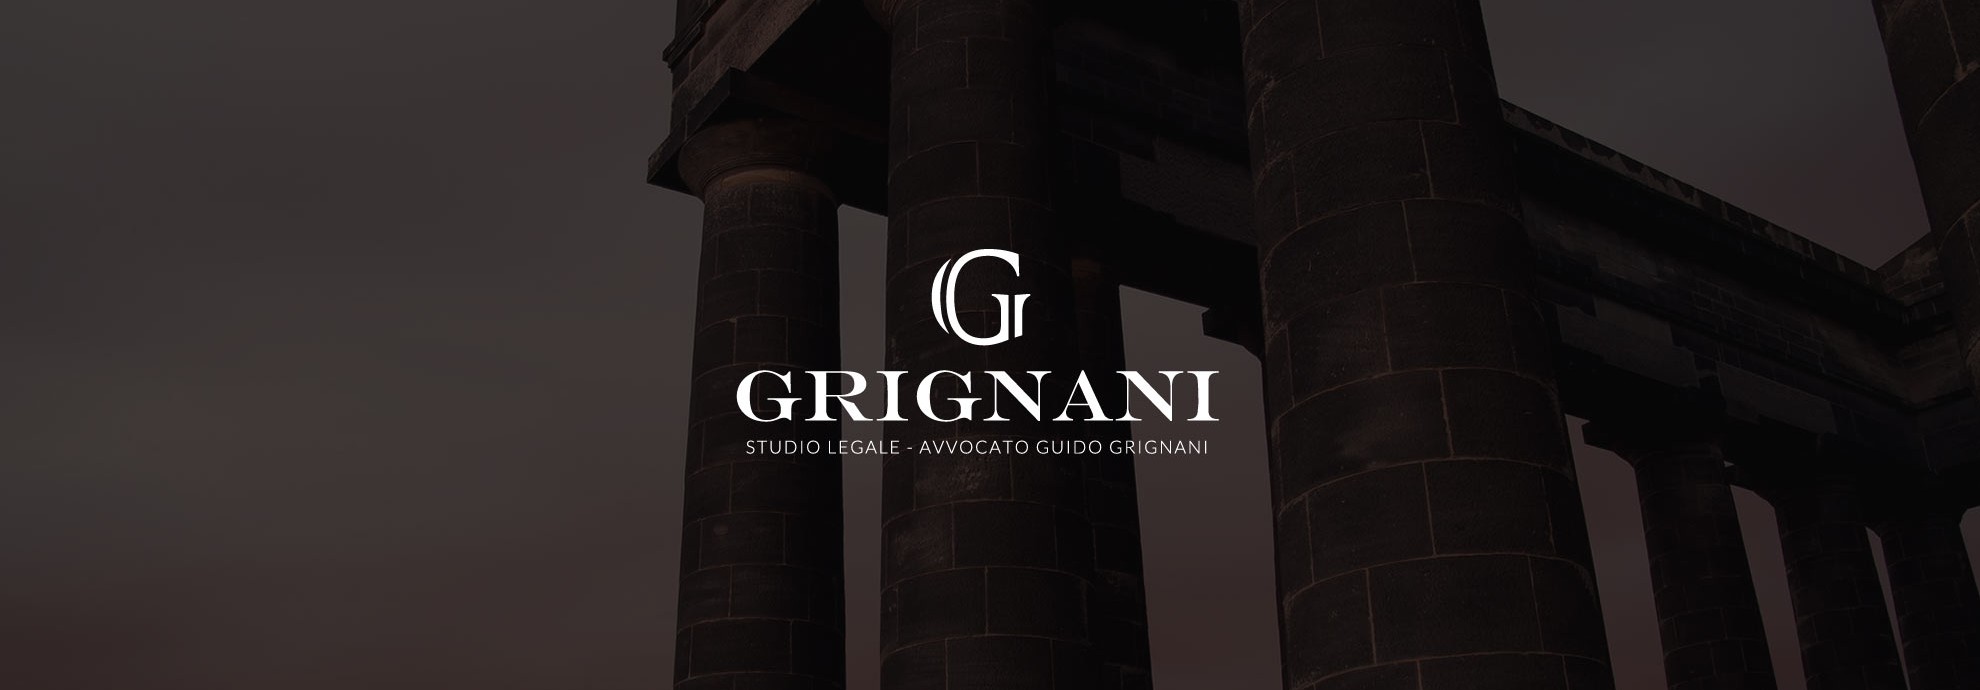 Grignani logo